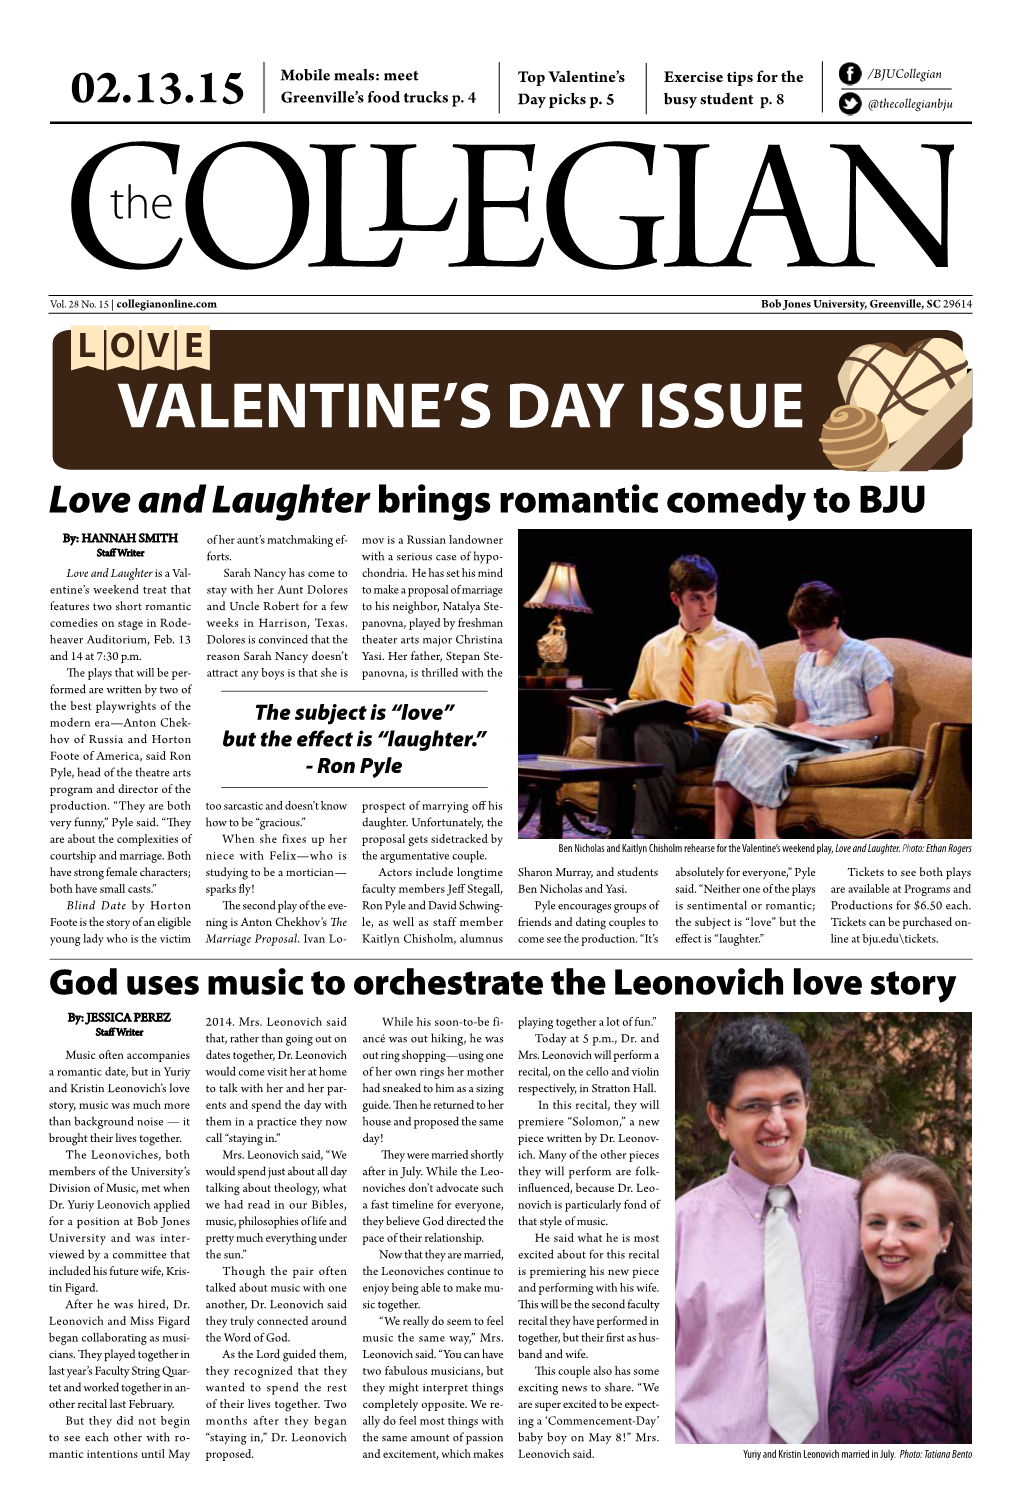 Valentine's Day Issue